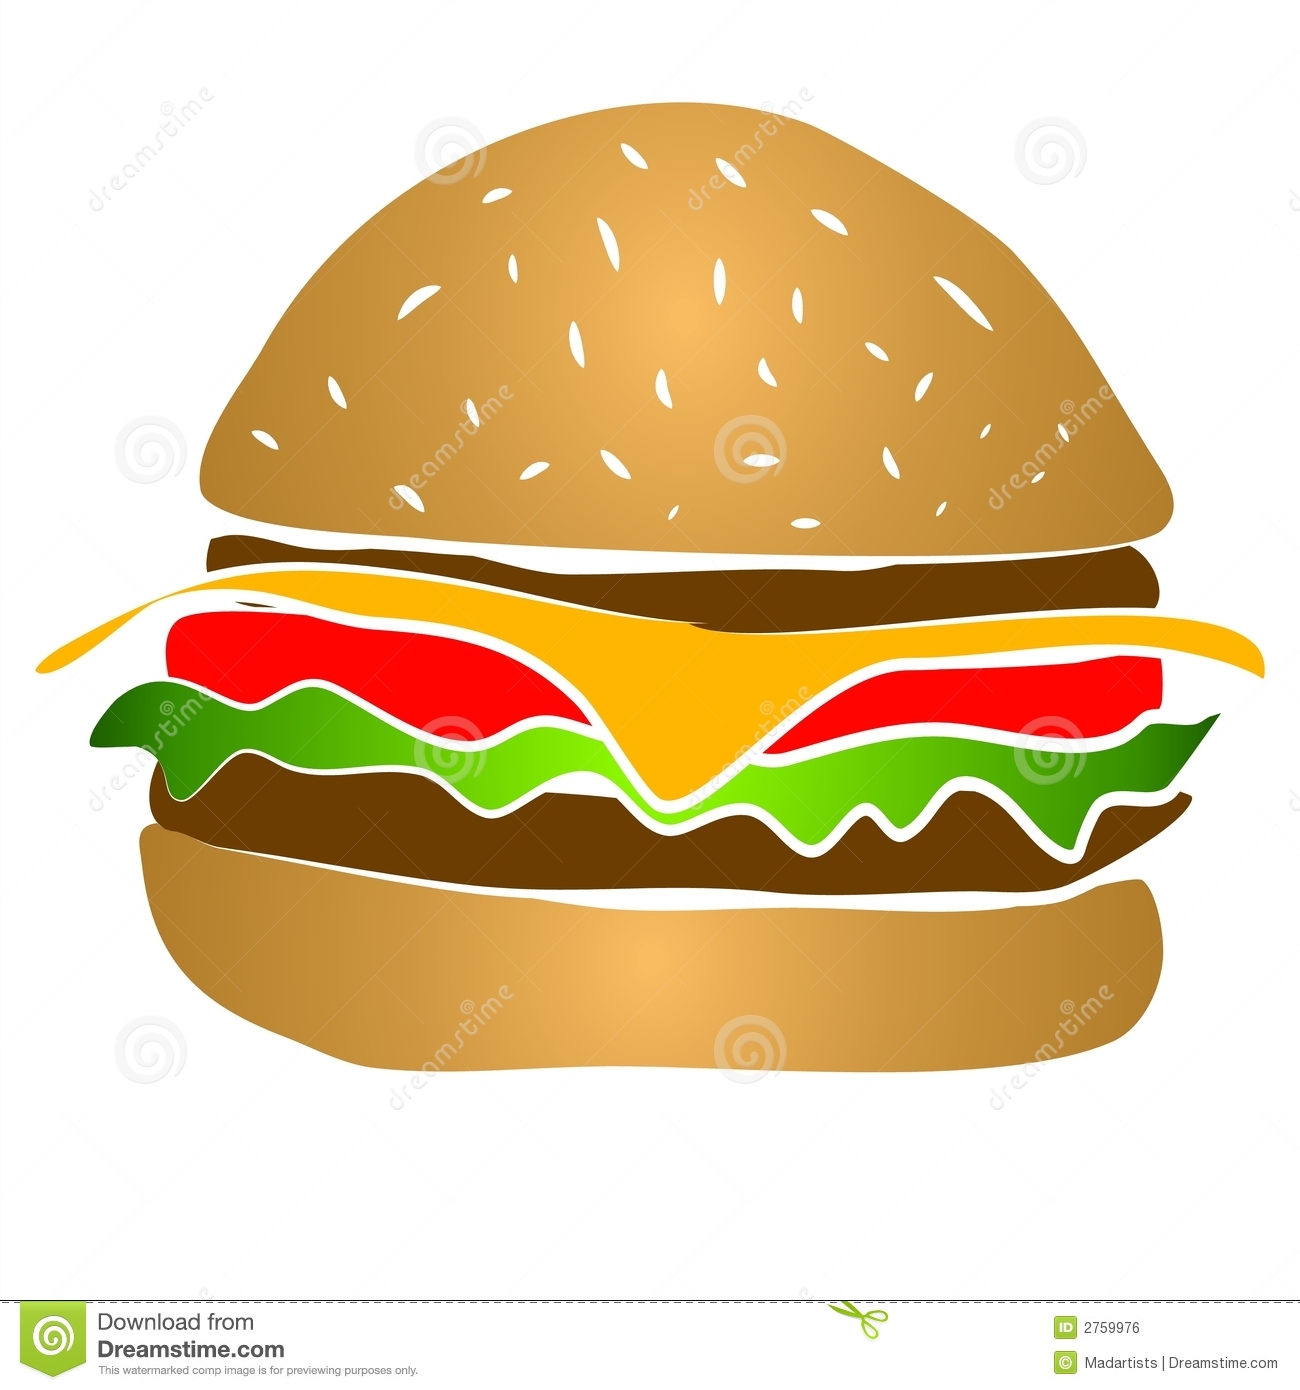 Cheeseburger Hamburger Clipart Royalty Free Stock Image   Image